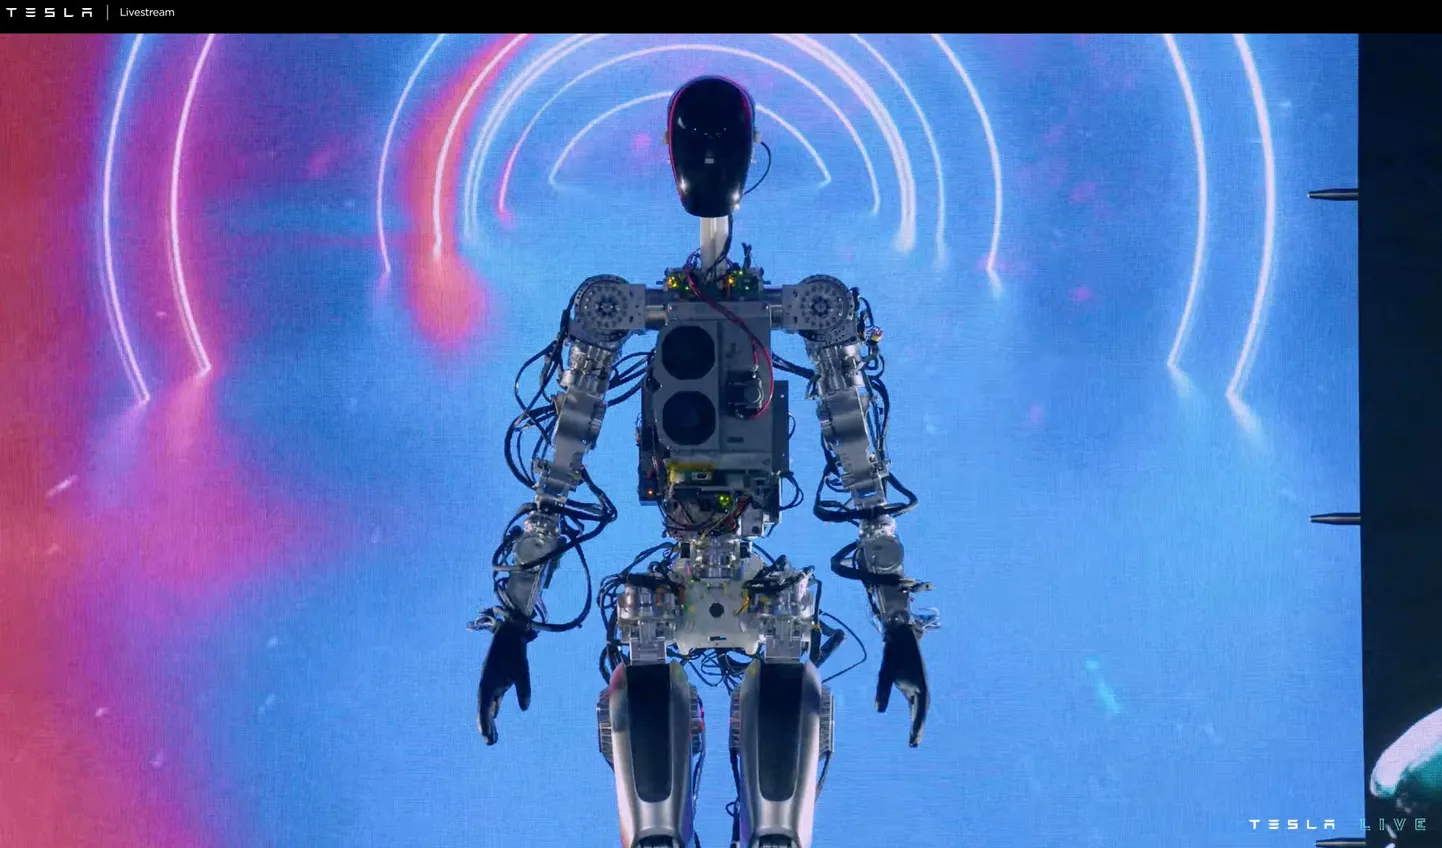 Tesla humanoid robot.